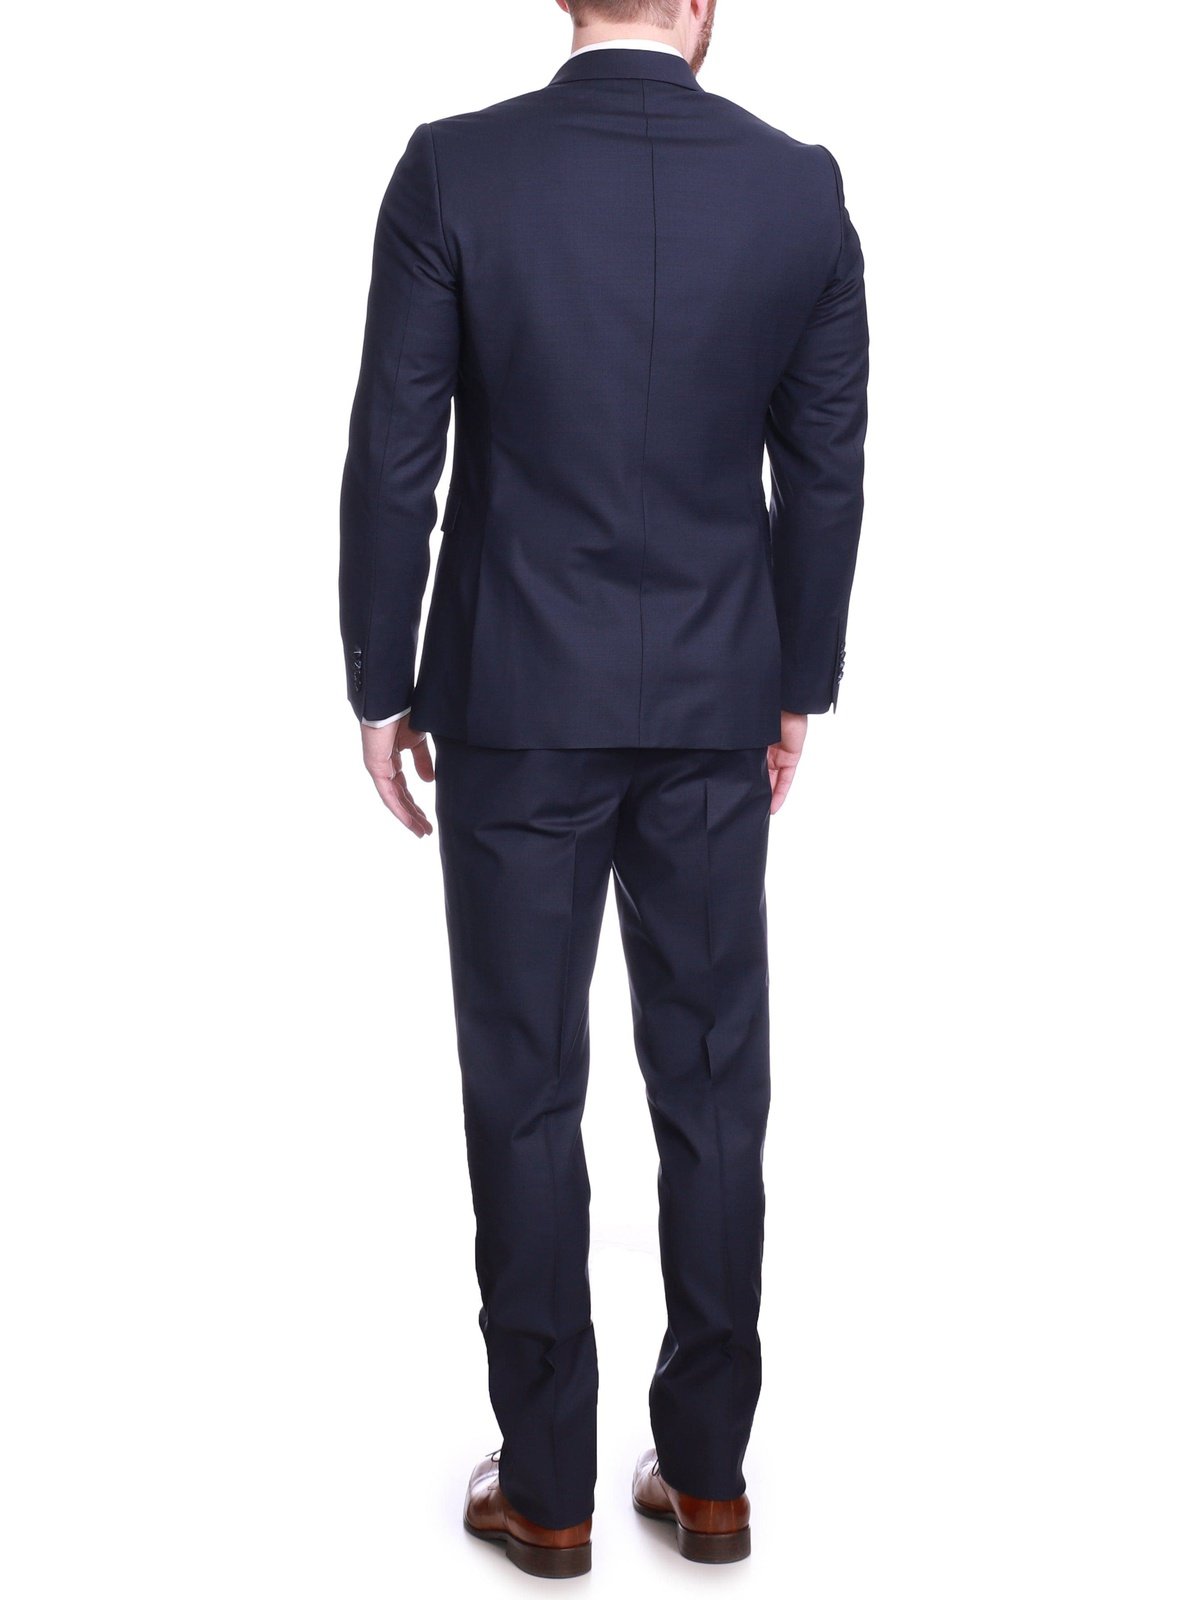 Raphael Mens Solid Navy Blue Slim Fit 2 Piece Suit With Peak Lapels